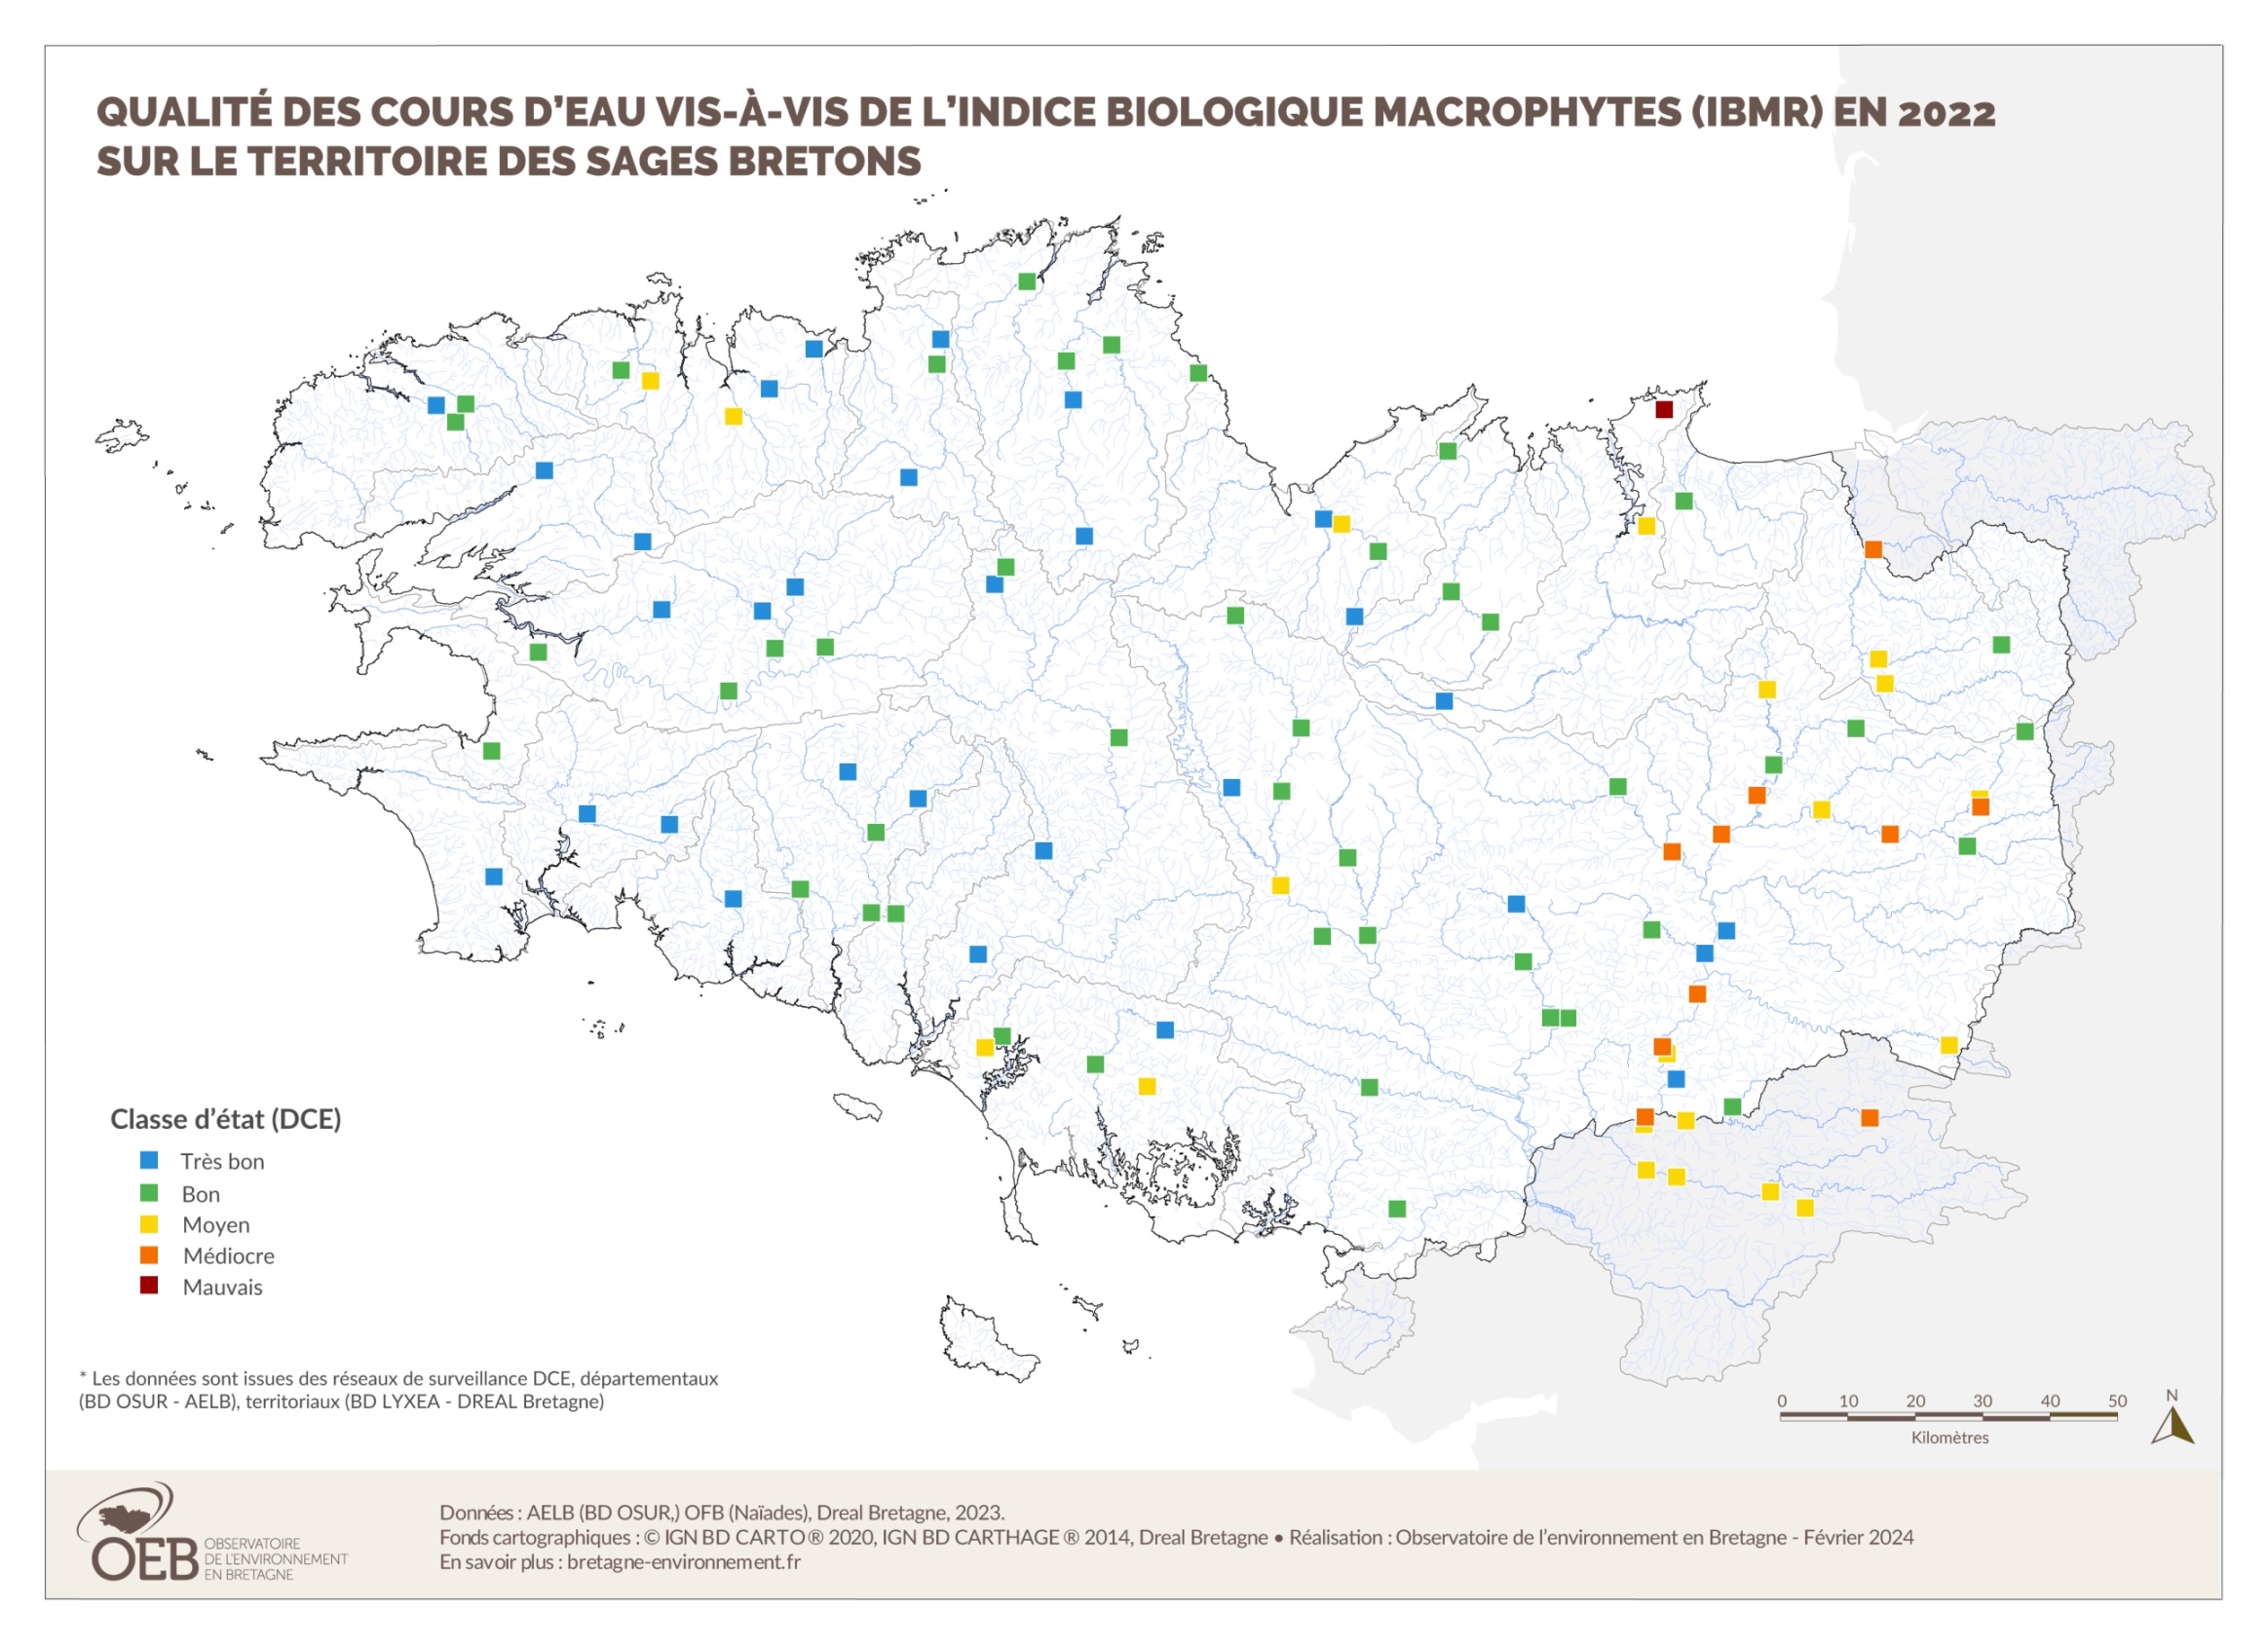 Qualité des cours d'eau bretons vis-à-vis de l'indice biologique macrophytes (IBMR) en 2022